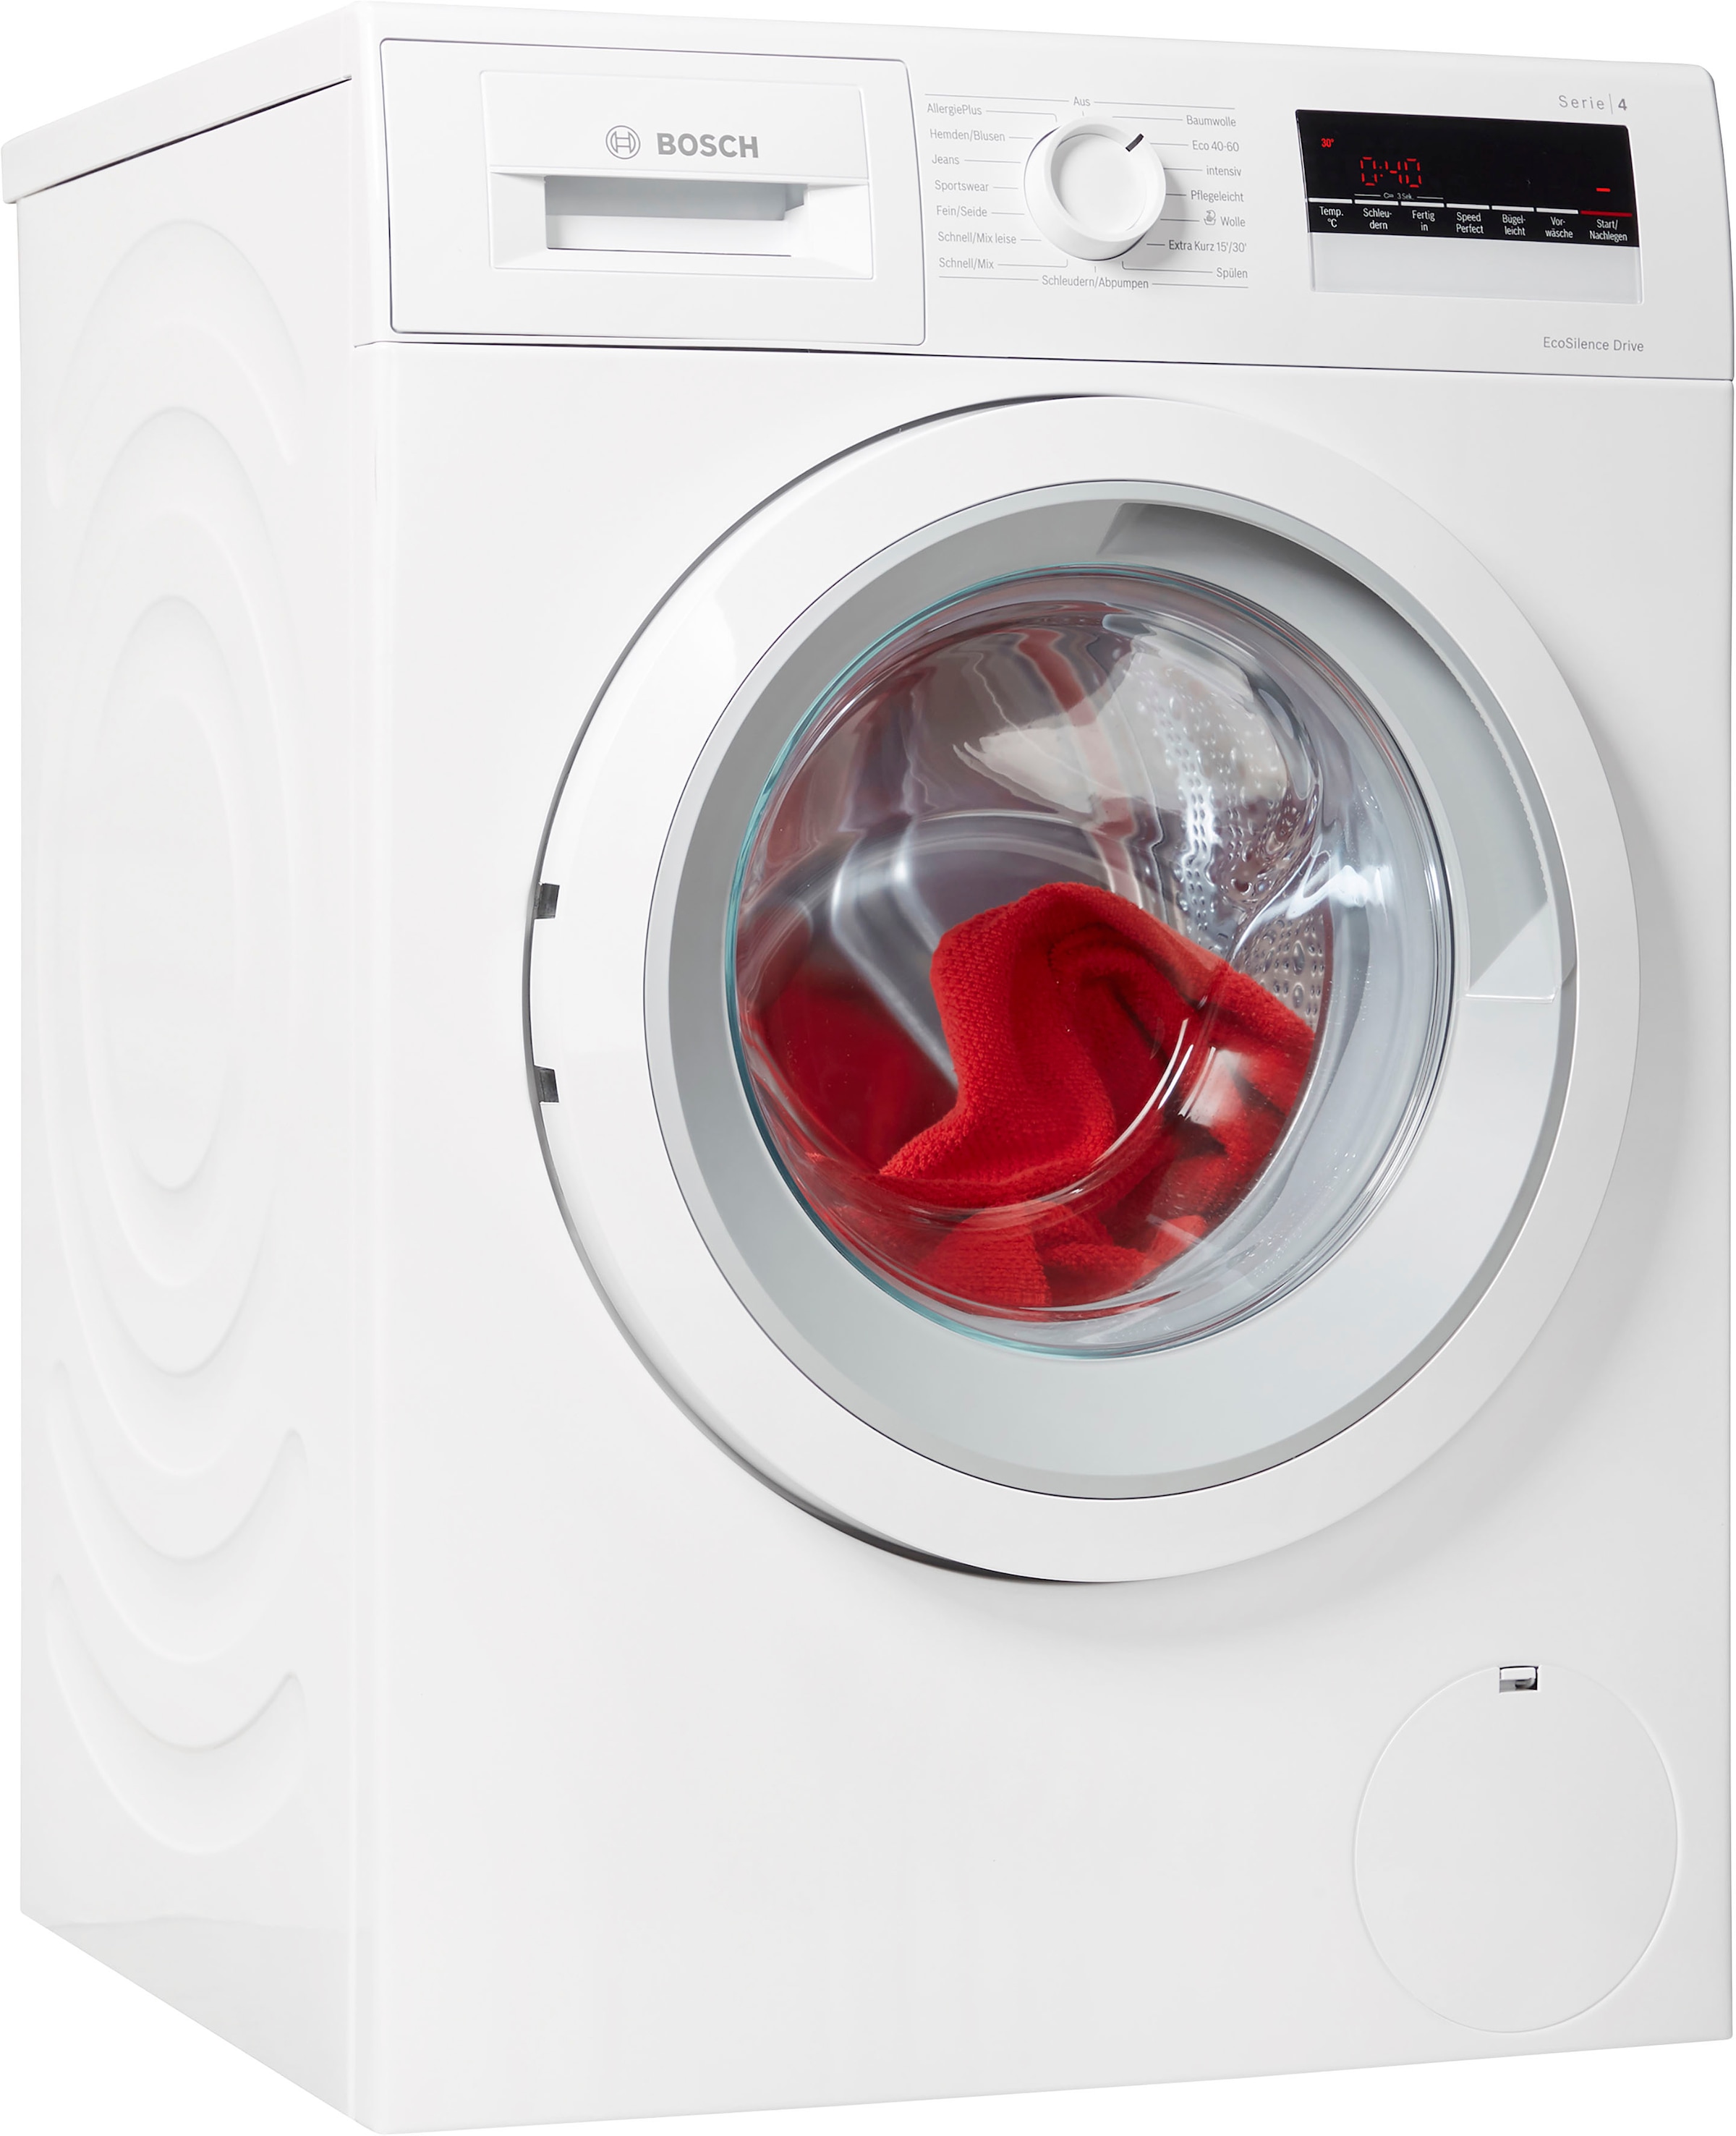 BOSCH Waschmaschine »WAN282A8«, Serie 4, WAN282A8, 8 kg, 1400 U/min kaufen  bei OTTO | Frontlader